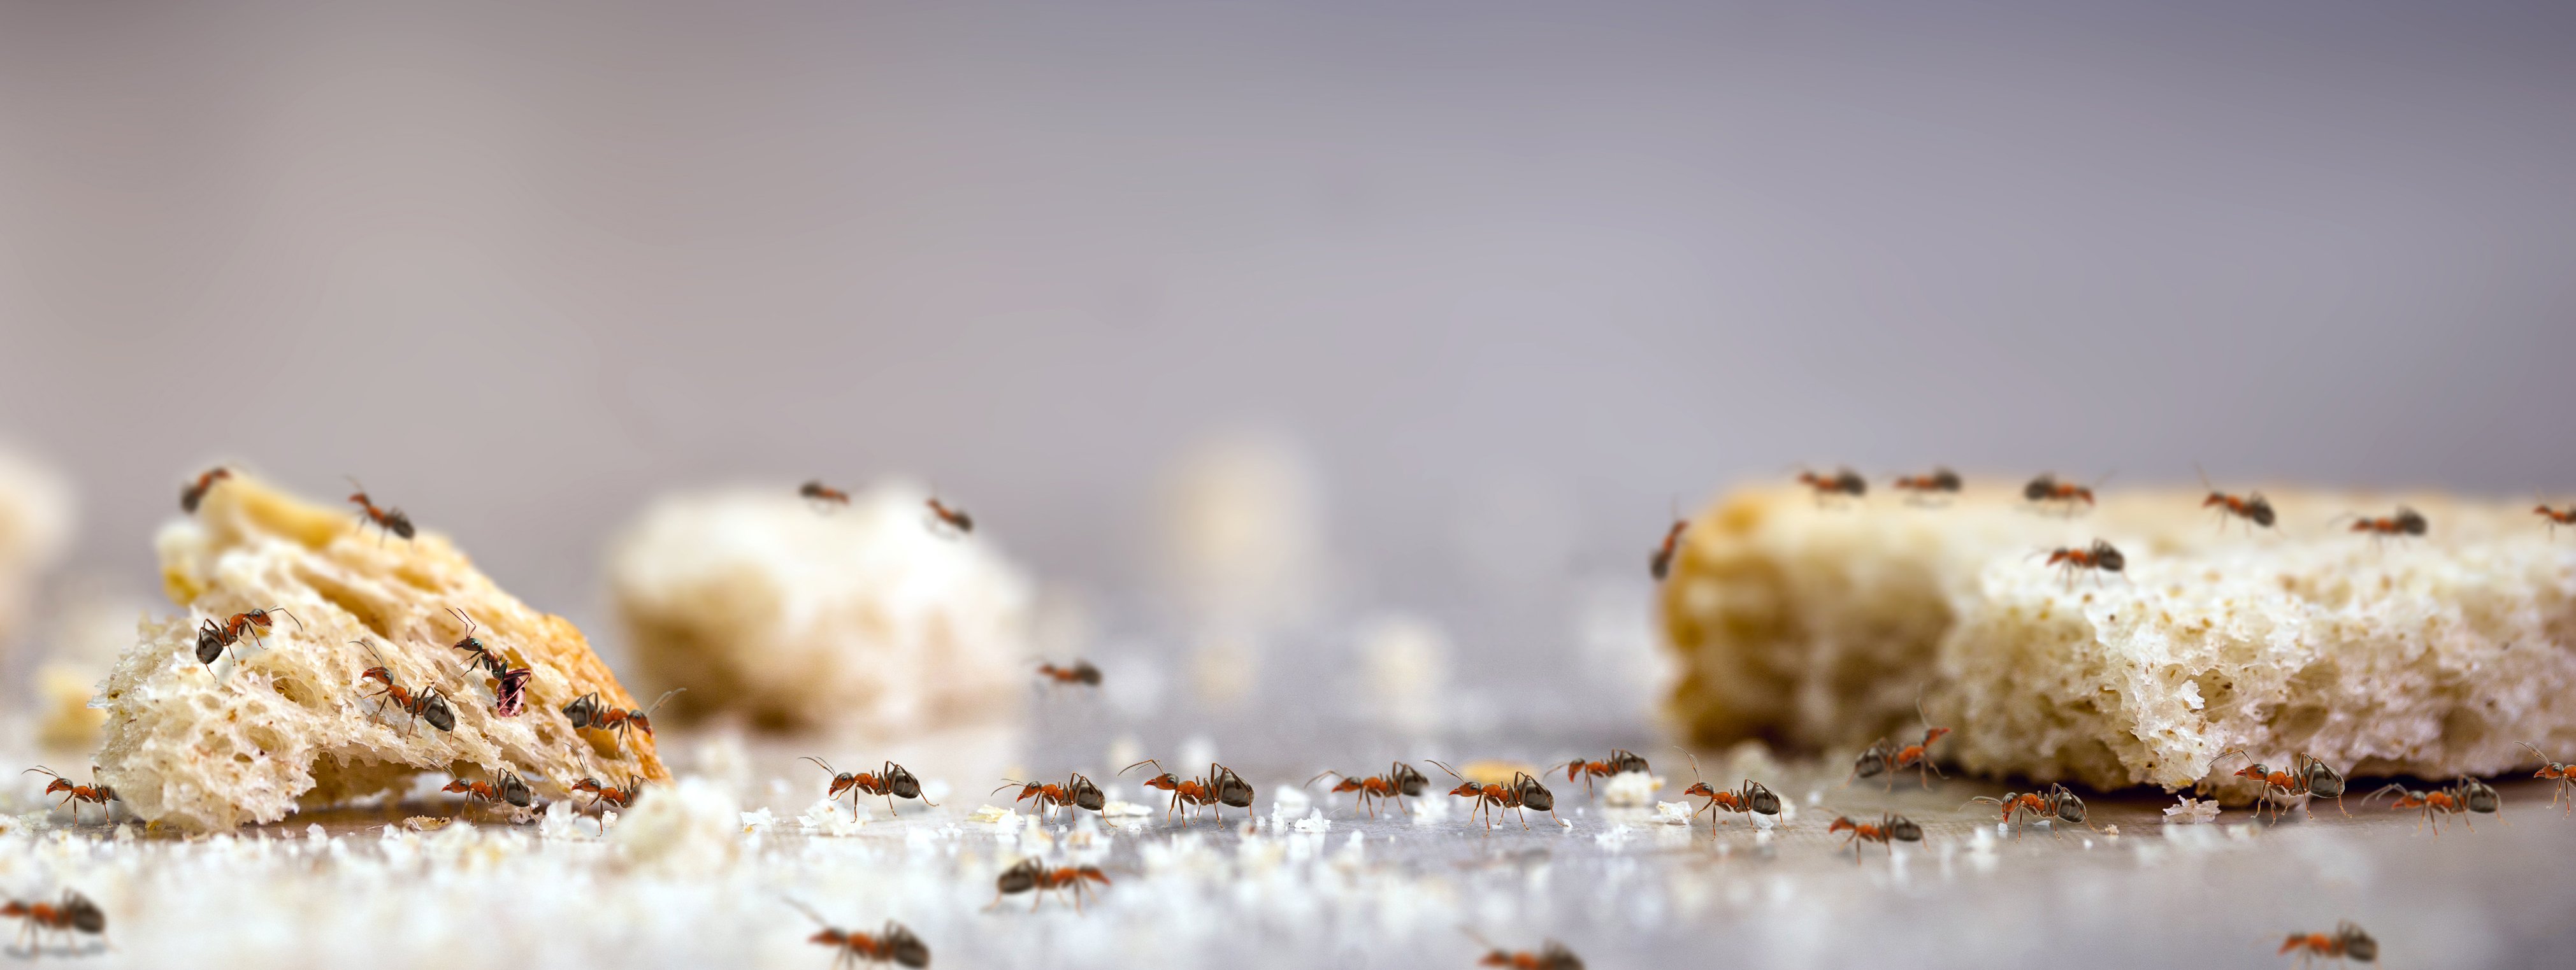 Ants eating bread crumbs on kitchen floor